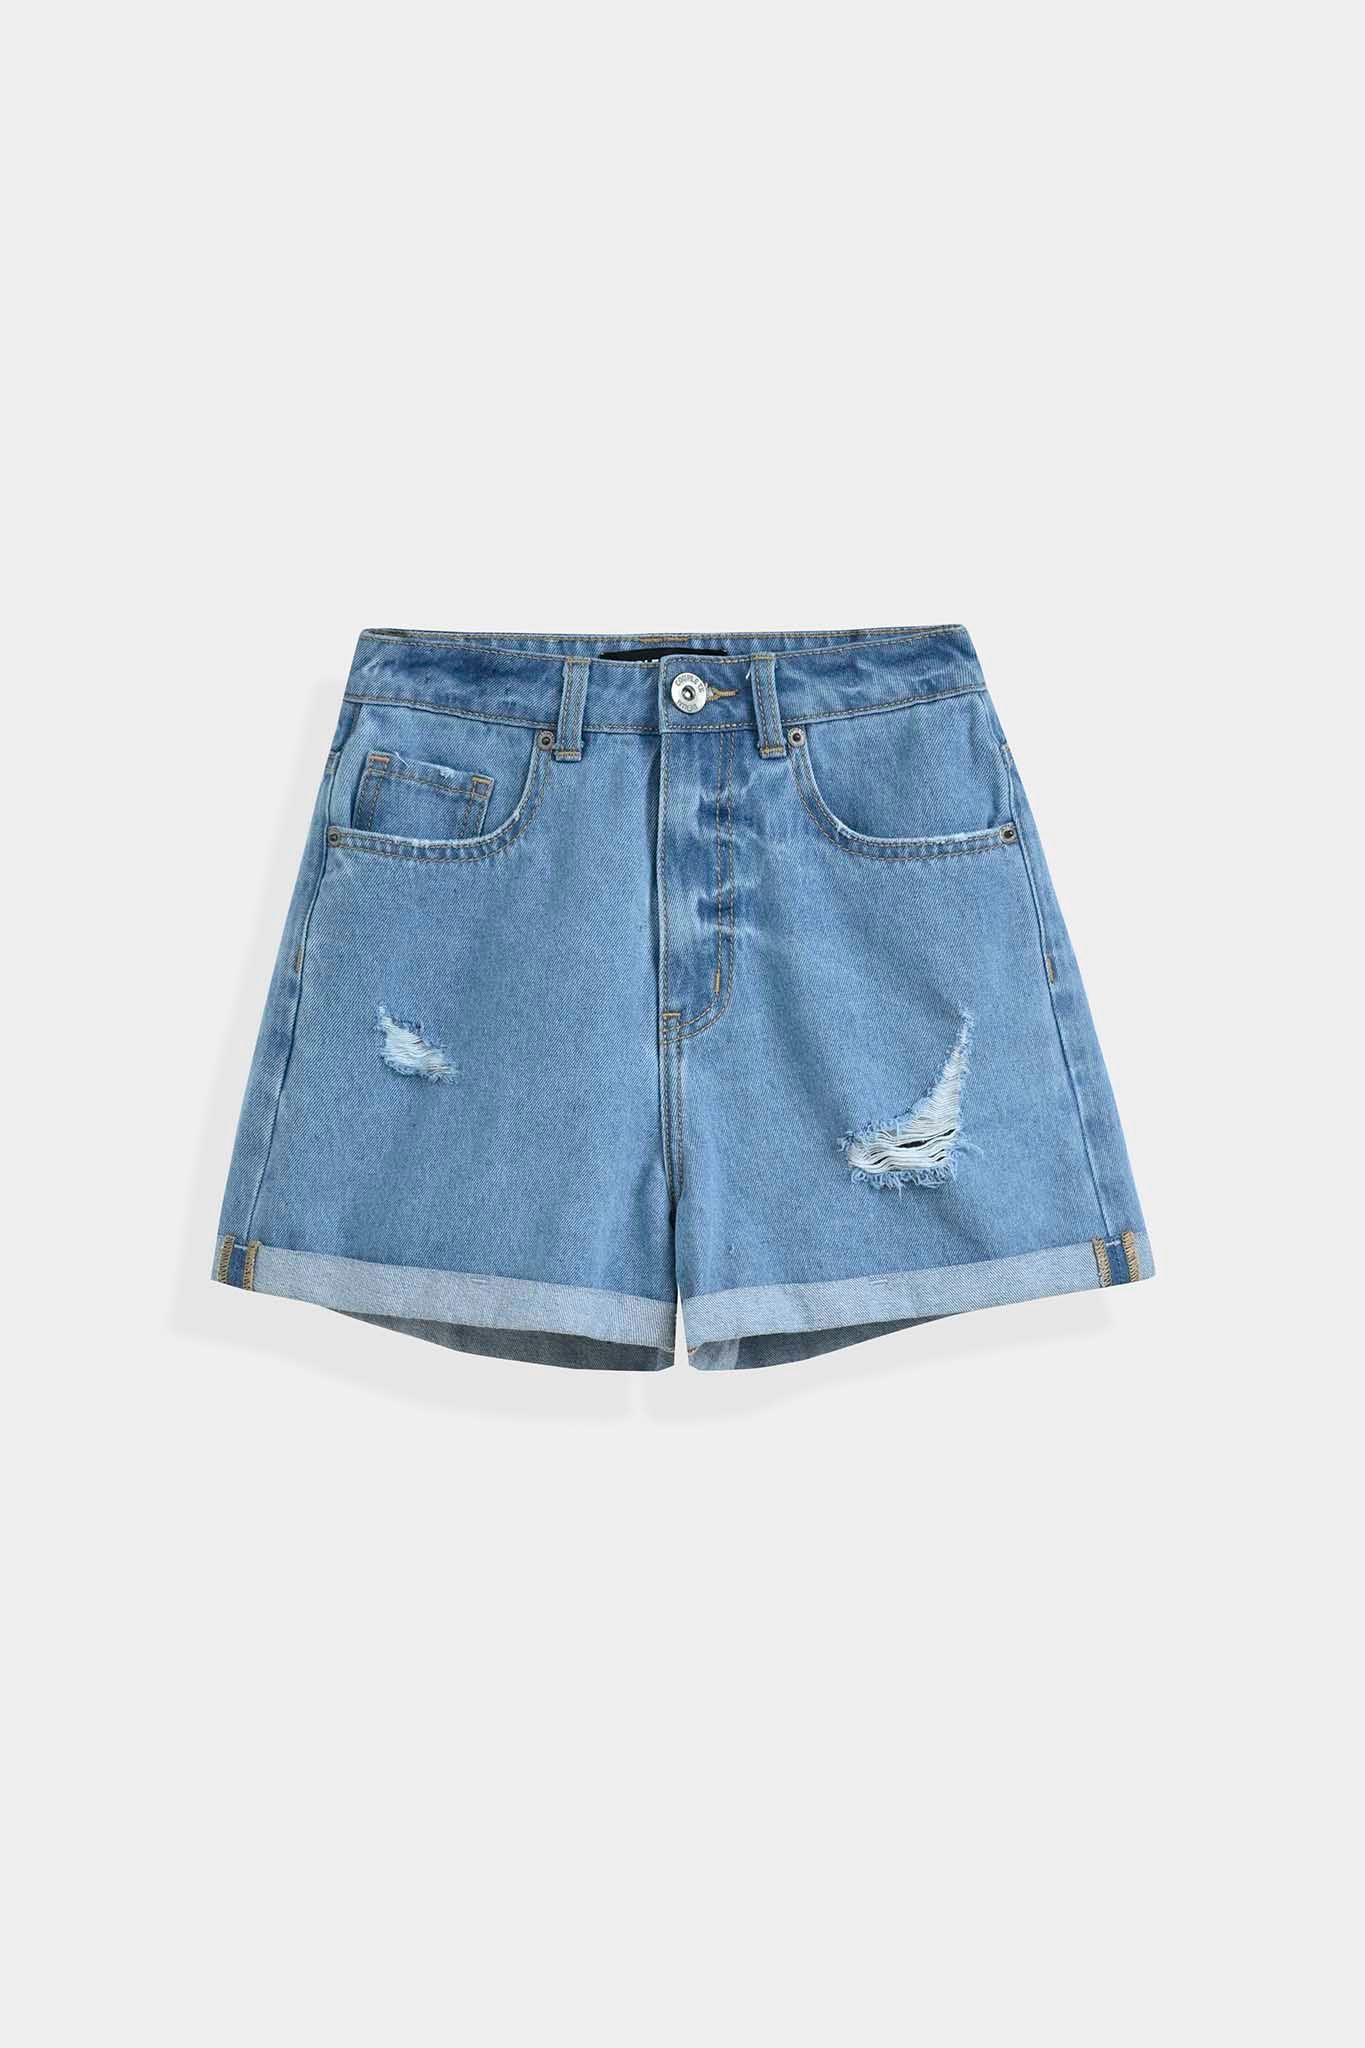 Quần Short Jeans Nữ Loose Fit Wash Rách WSR 2019 - 